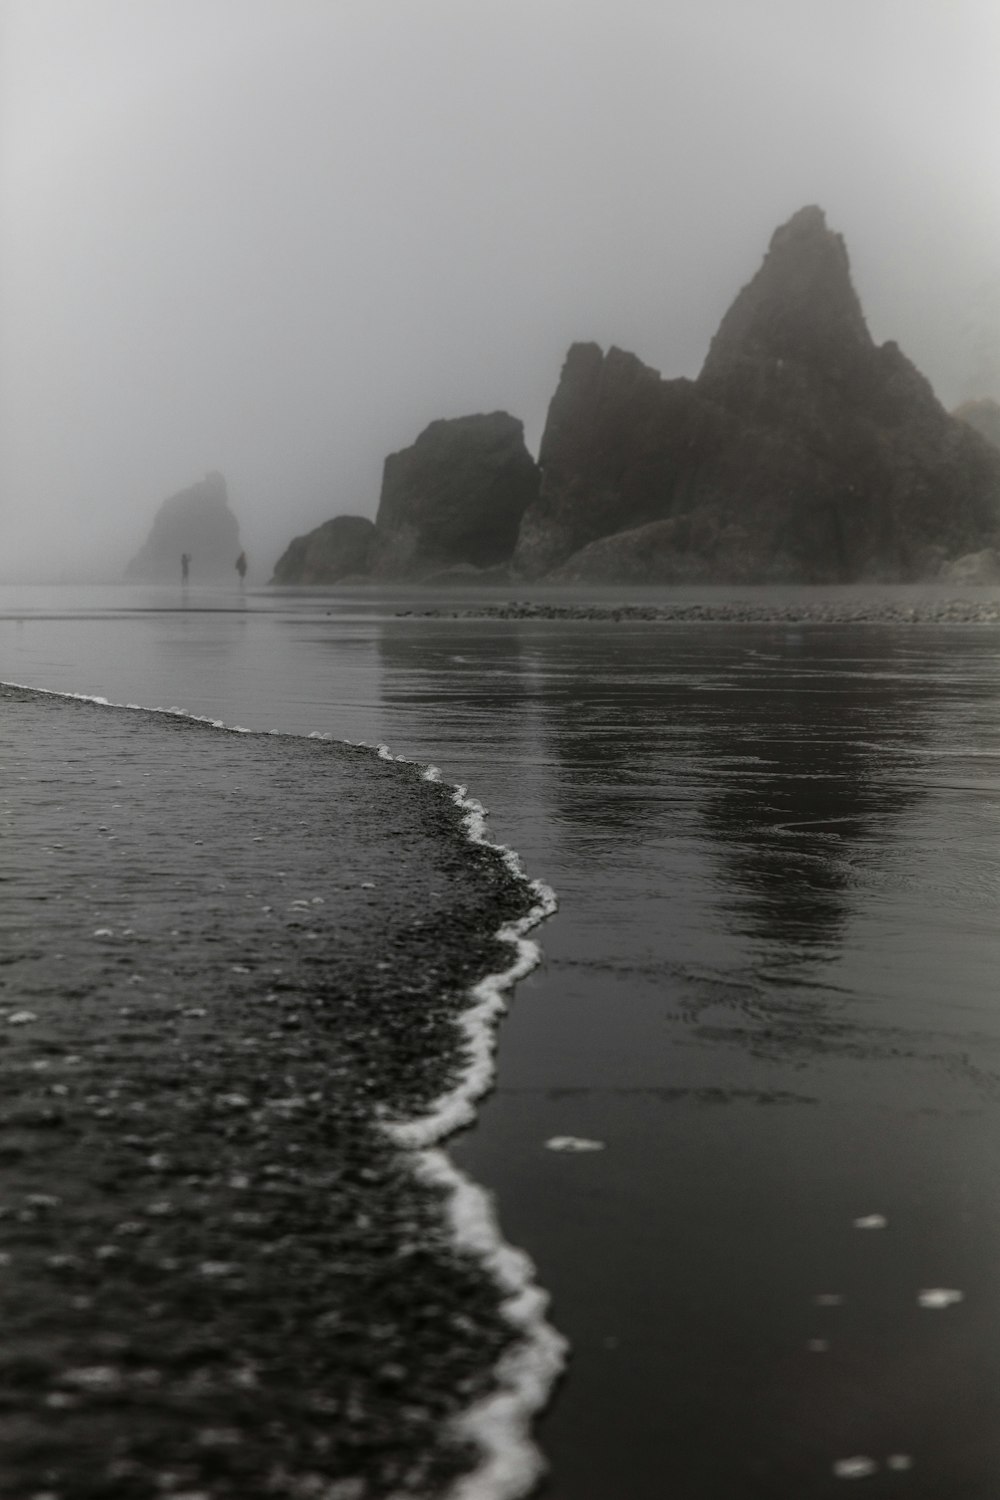 fotografia in scala di grigi di due persone in piedi davanti alla formazione rocciosa